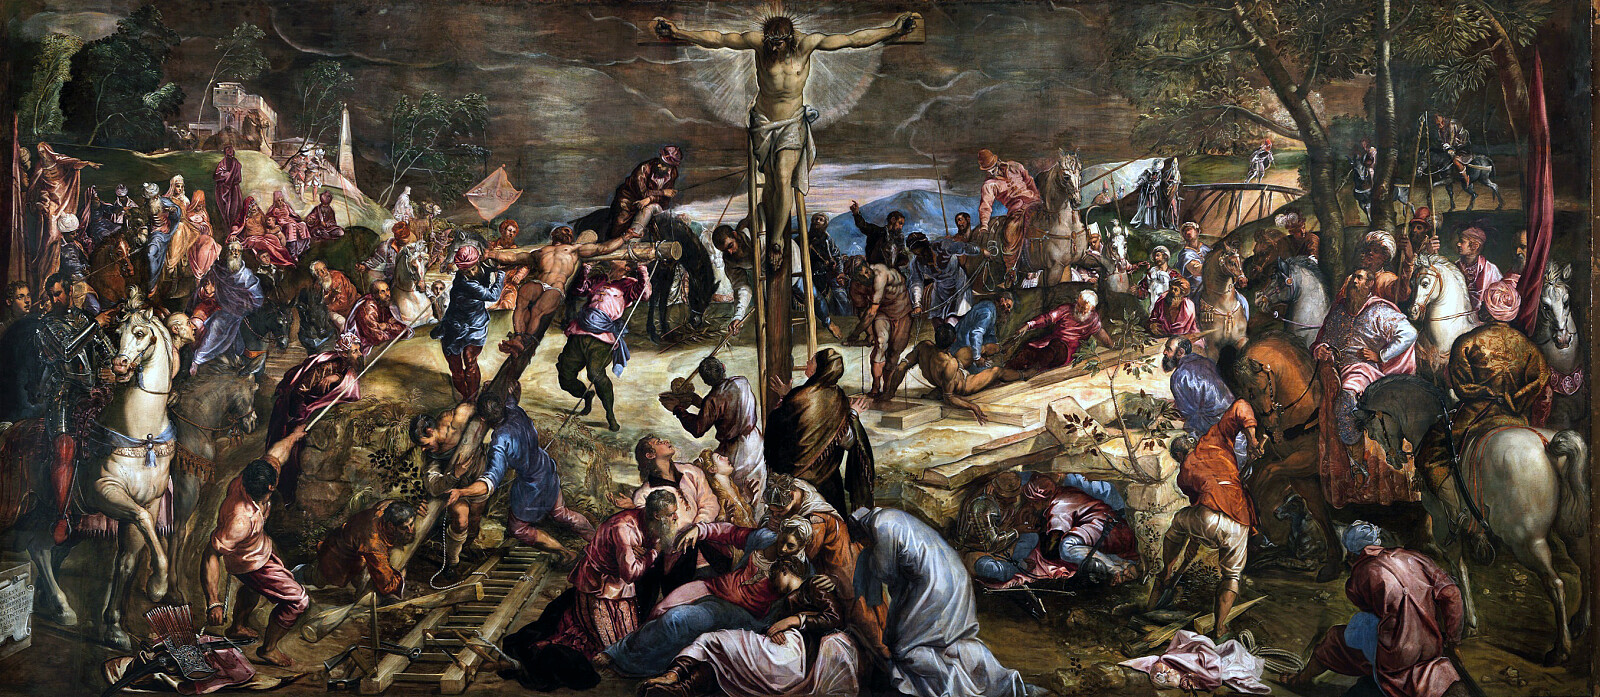 Ukrzyżowanie Jezusa - Tintoretto, Public domain, via Wikimedia Commons